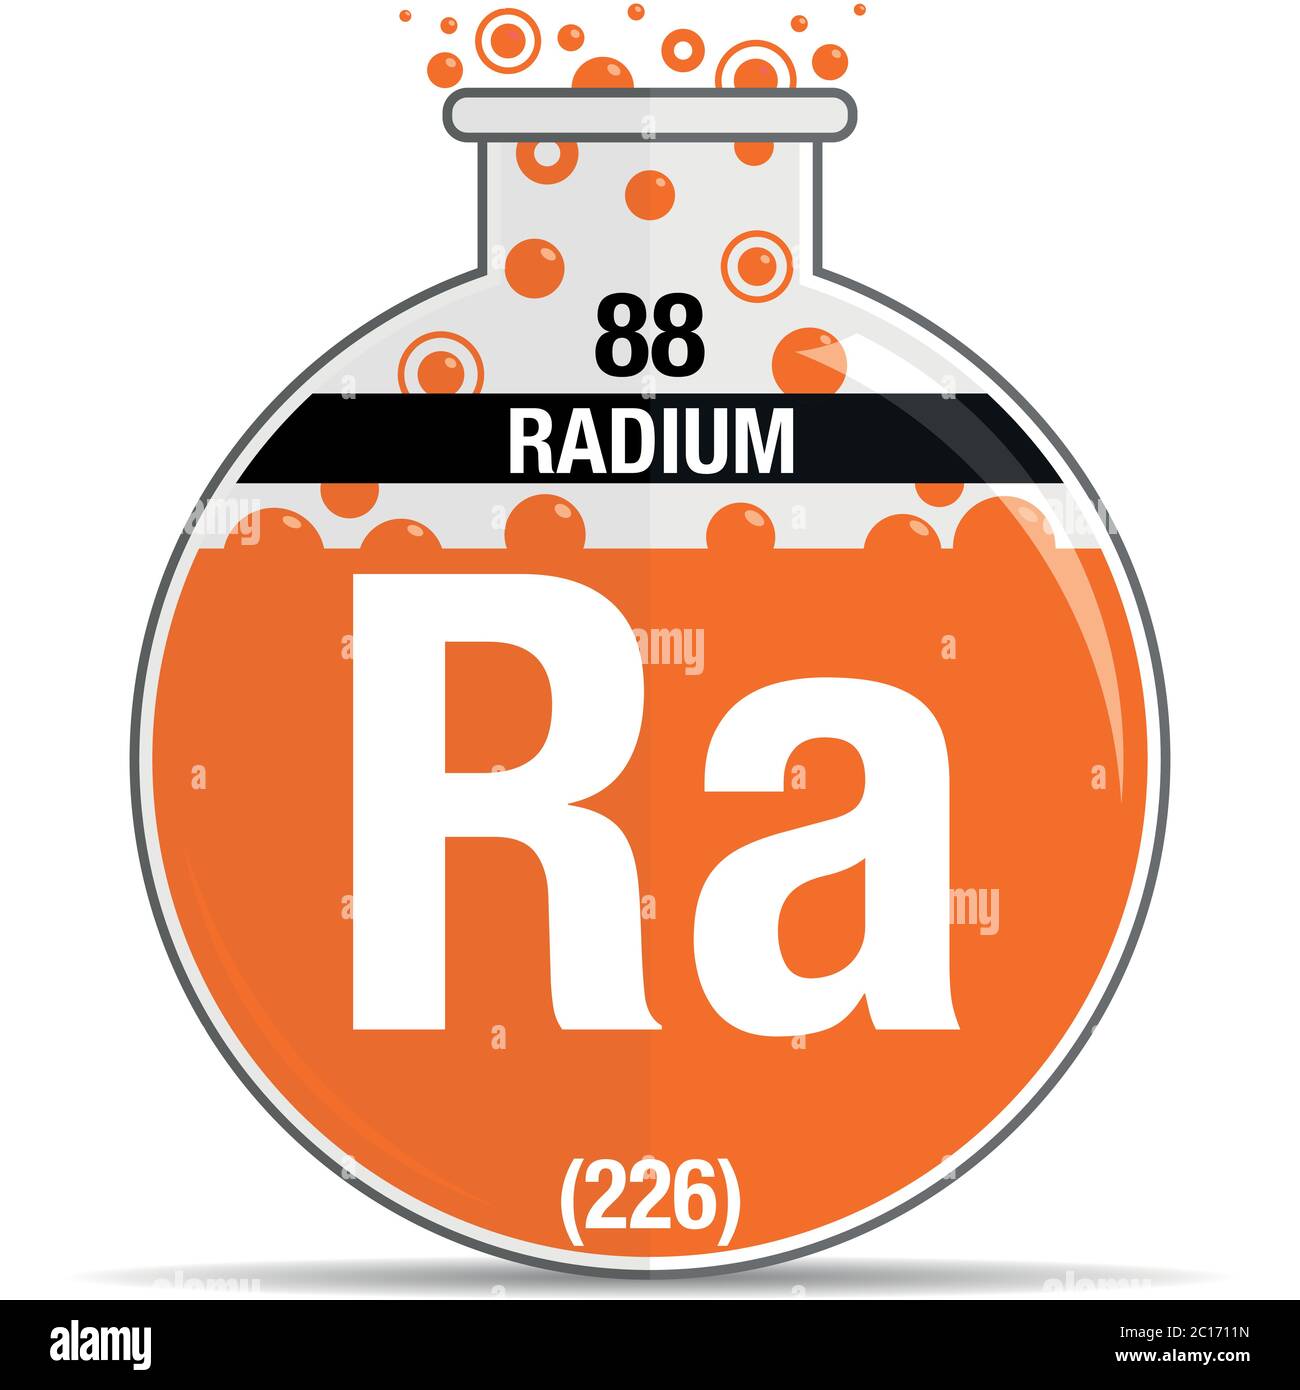 Boum 2 Avril 2022 Symbole-radium-sur-la-fiole-ronde-chimique-element-numero-88-du-tableau-periodique-des-elements-chimie-image-vectorielle-2c1711n